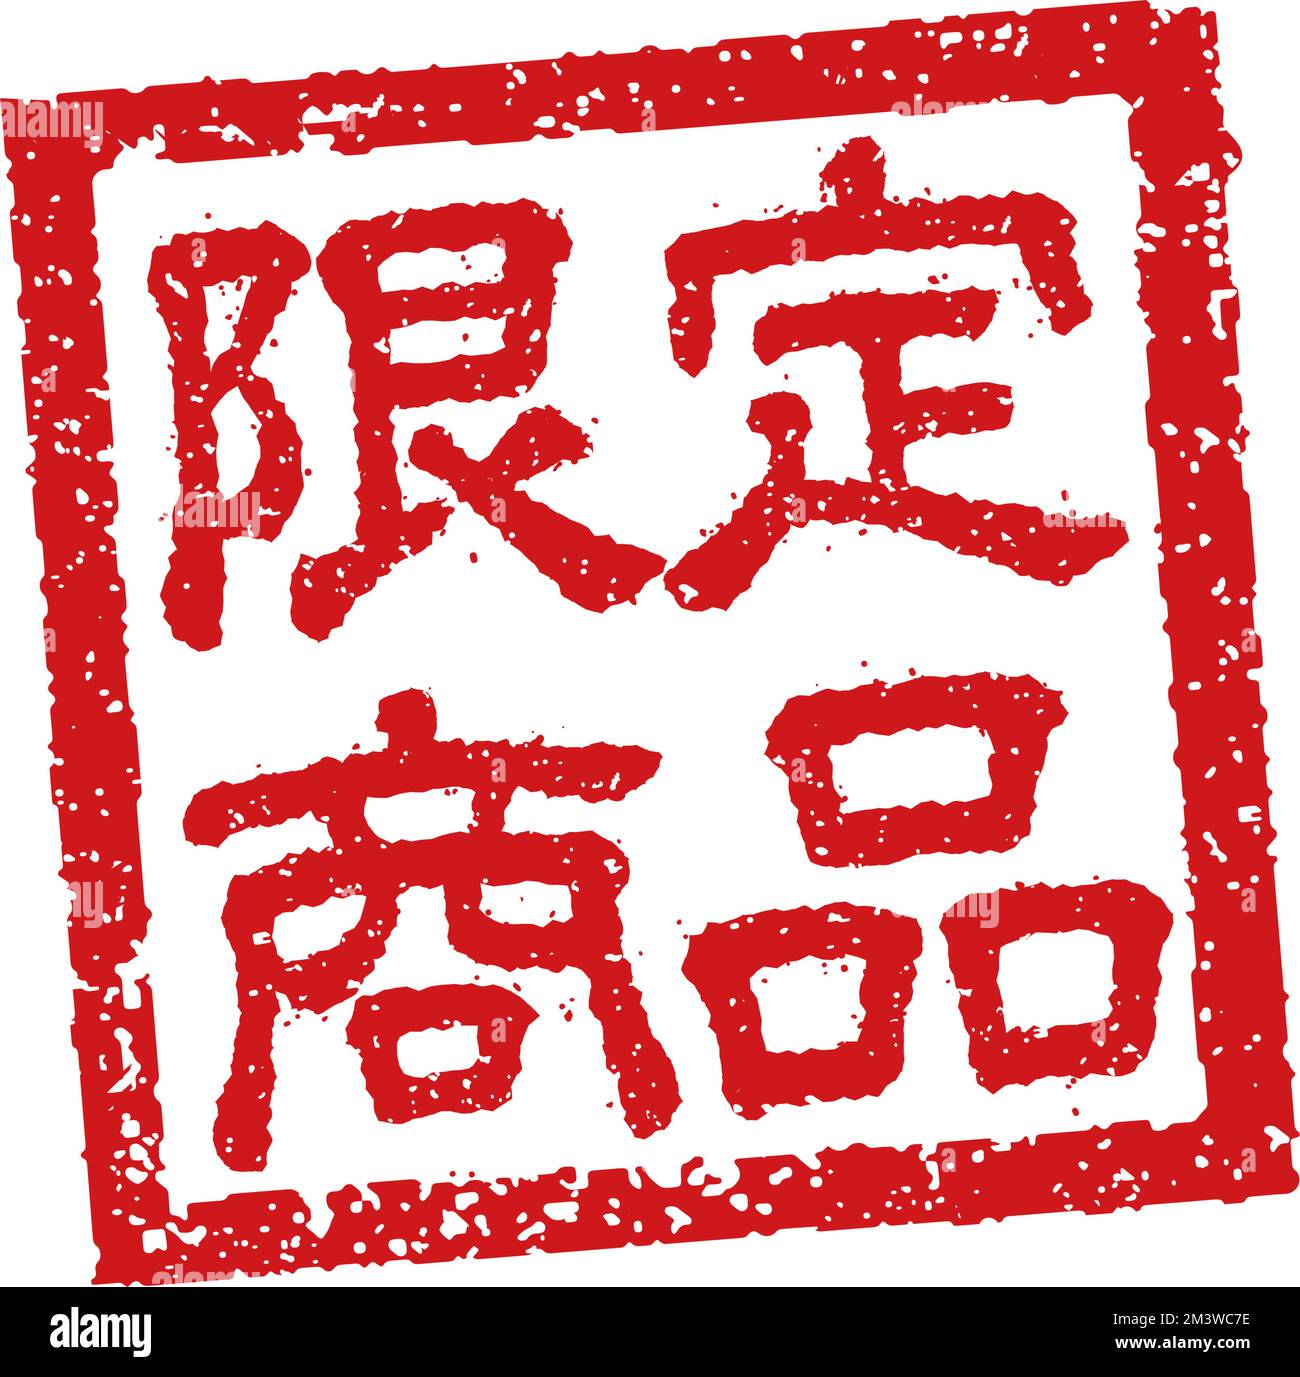 Abbildung von Gummistempeln, die häufig in japanischen Restaurants und Pubs verwendet wird. Usw. | Limited Edition Stock Vektor